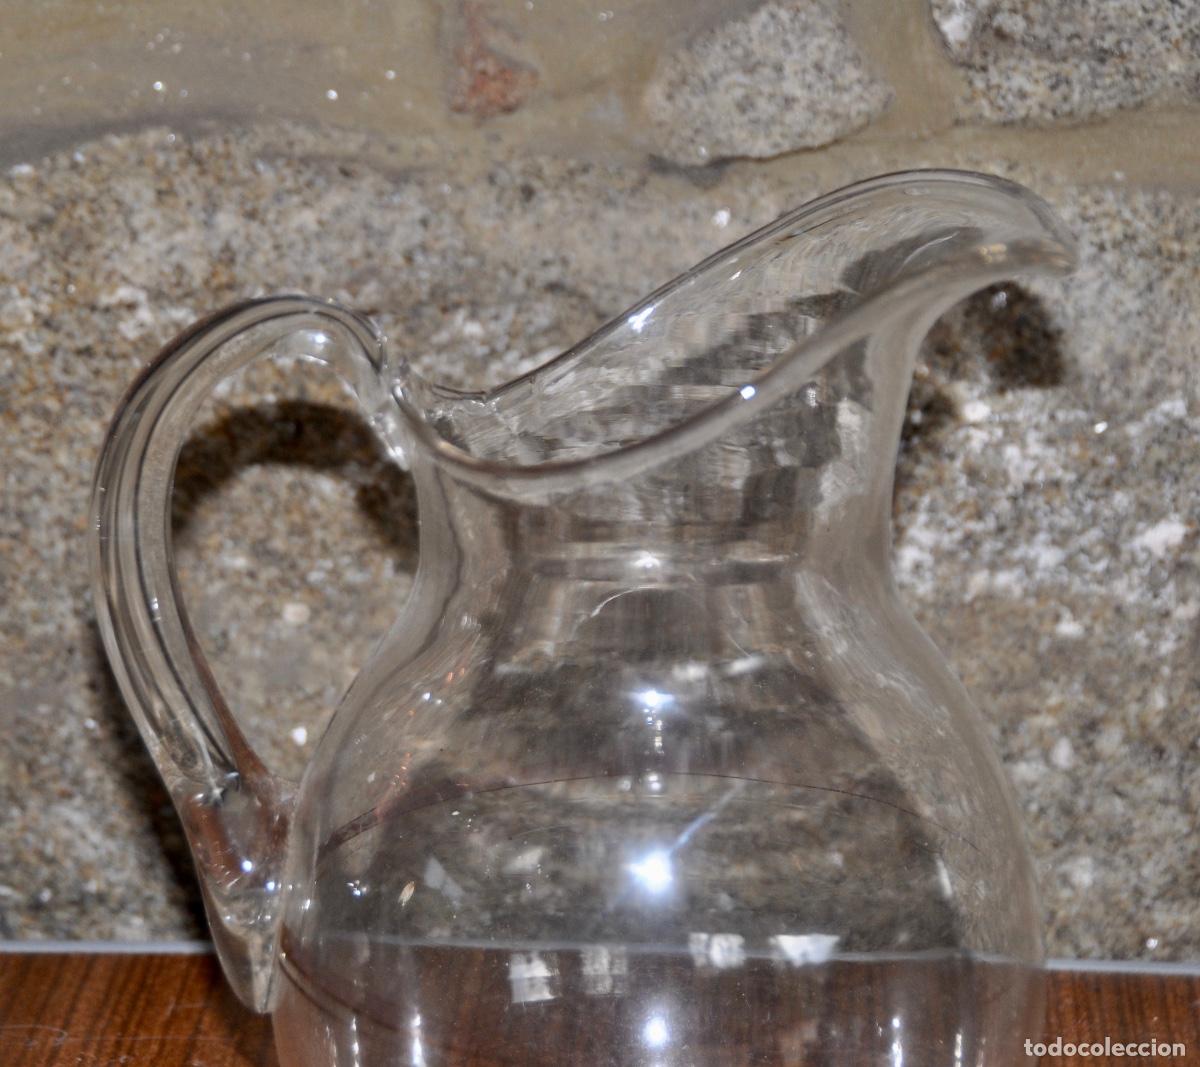 jarra agua cristal verde bohemia española. nuev - Acheter Objets vintage en  cristal et en verre sur todocoleccion